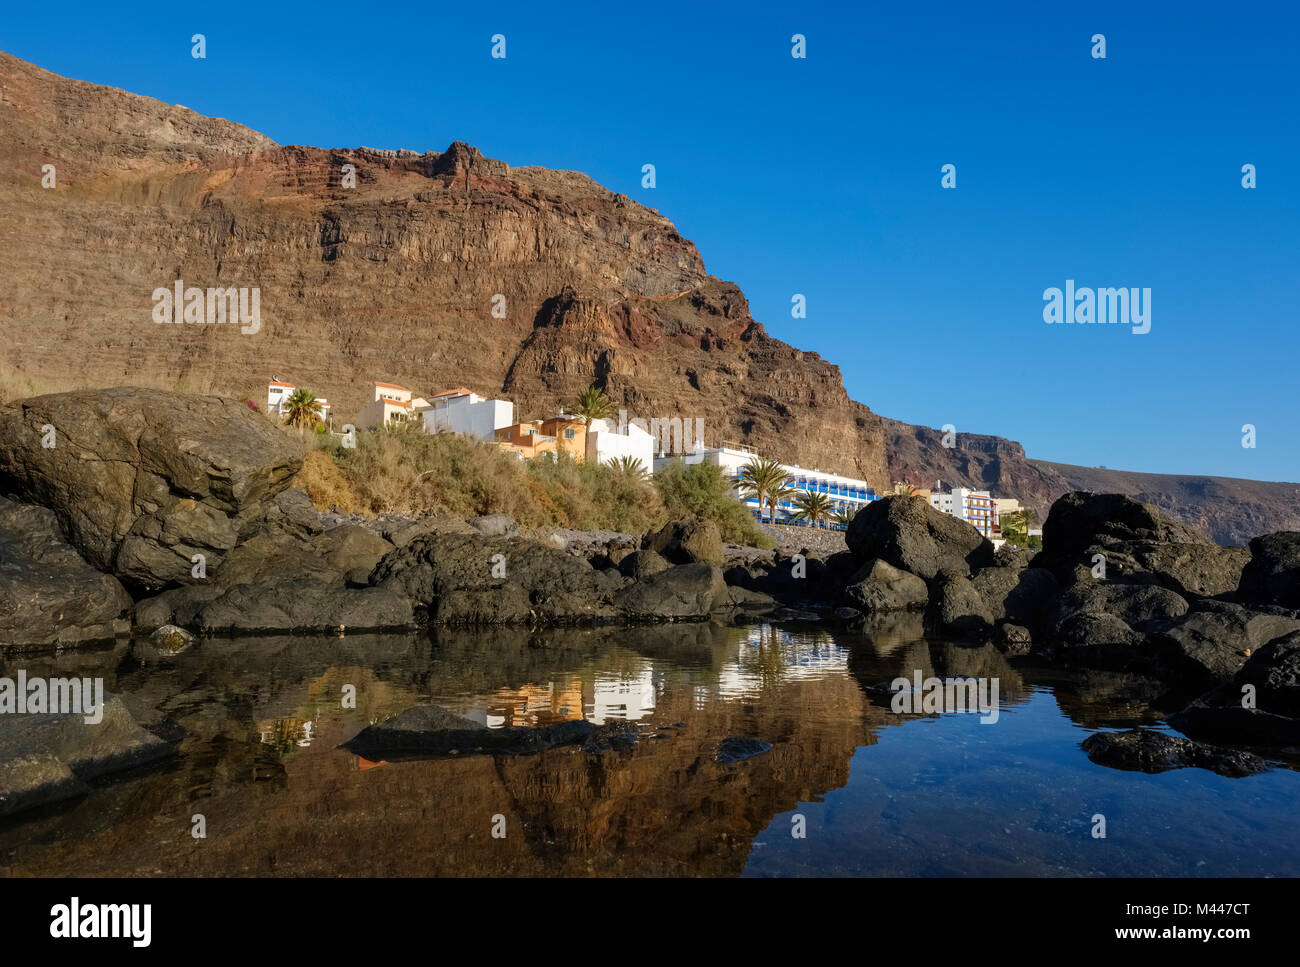 Tidal Pool,Vueltas,Valle Gran Rey,La Gomera,Canary Islands,Spain Stock Photo